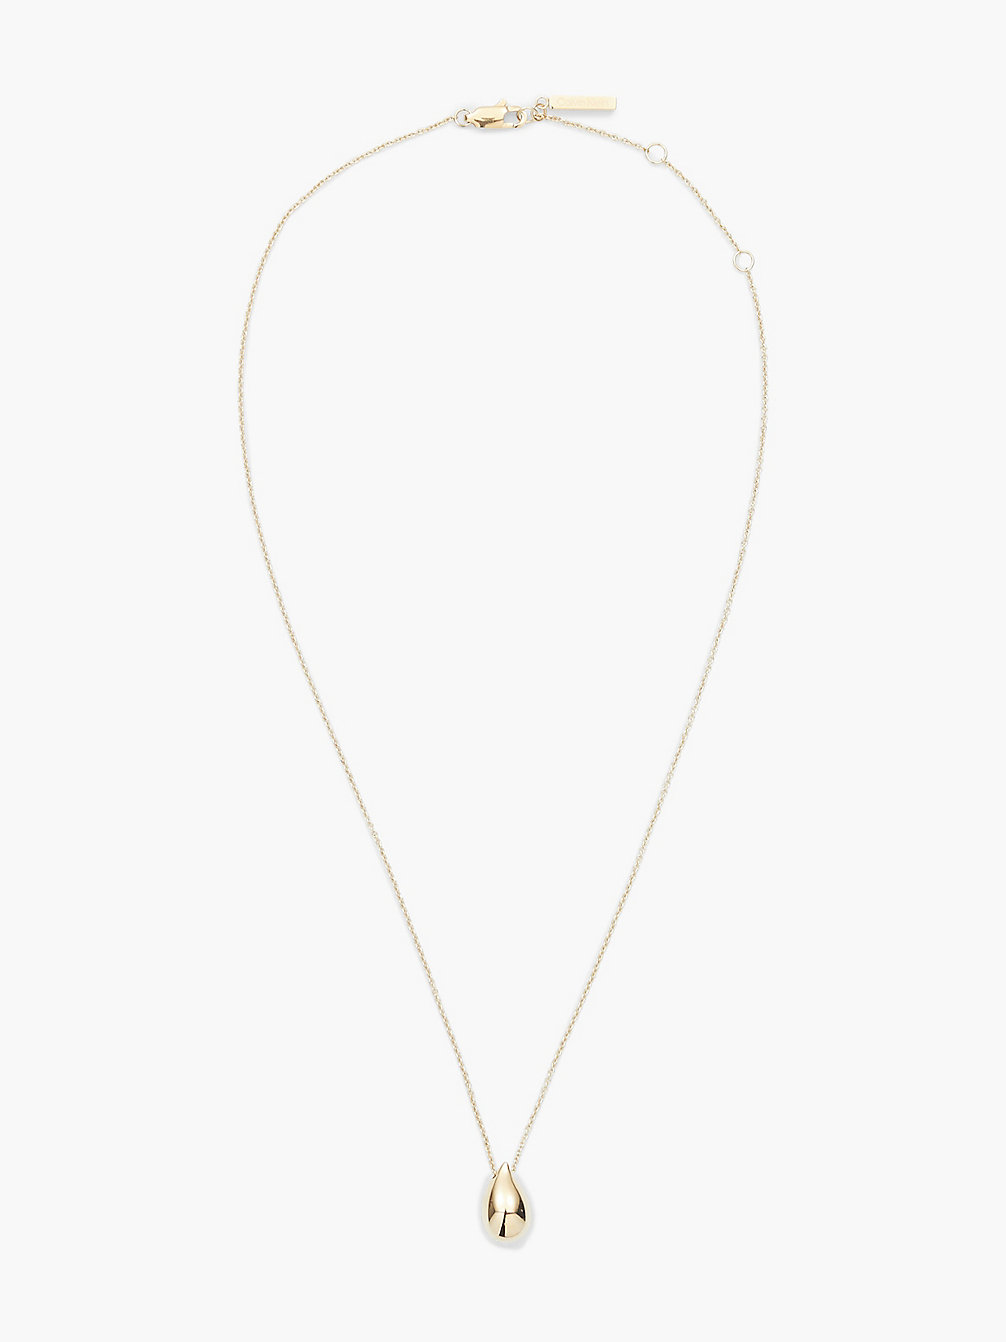 GOLD Necklace - Sculptured Drops undefined women Calvin Klein